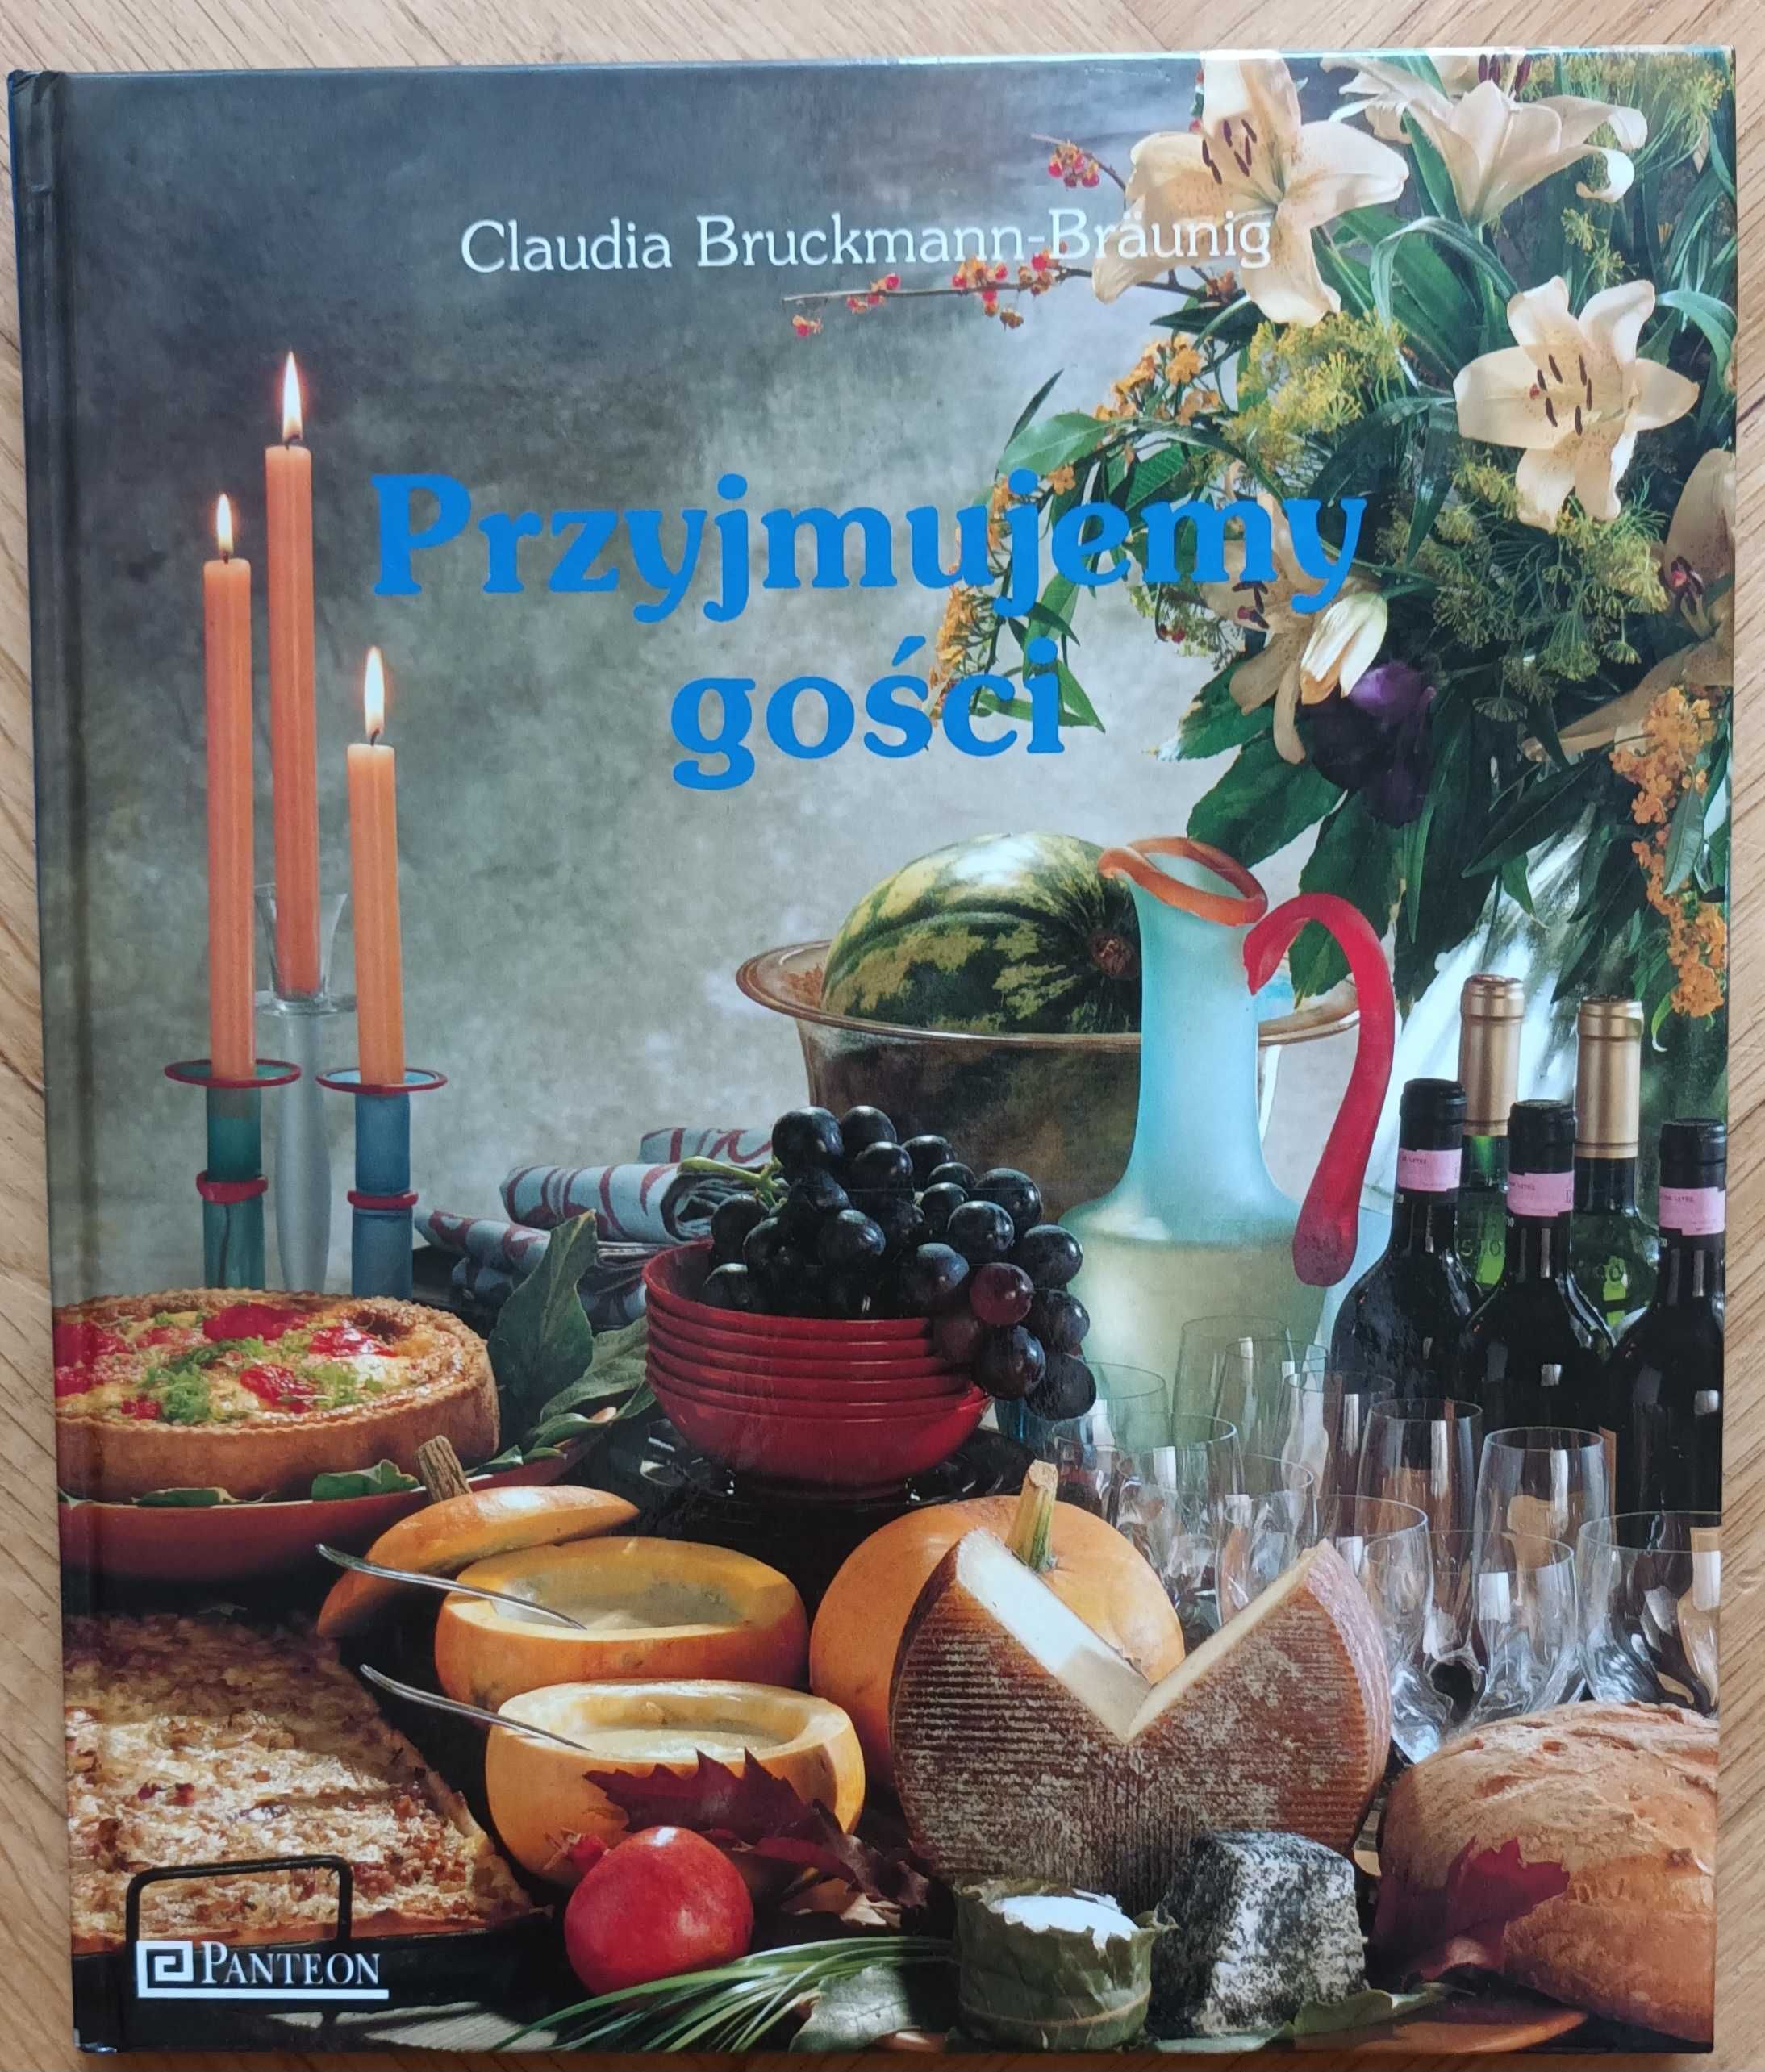 Książka - poradnik " Przyjmujemy gości"  Claudia Bruckmann - Braunig